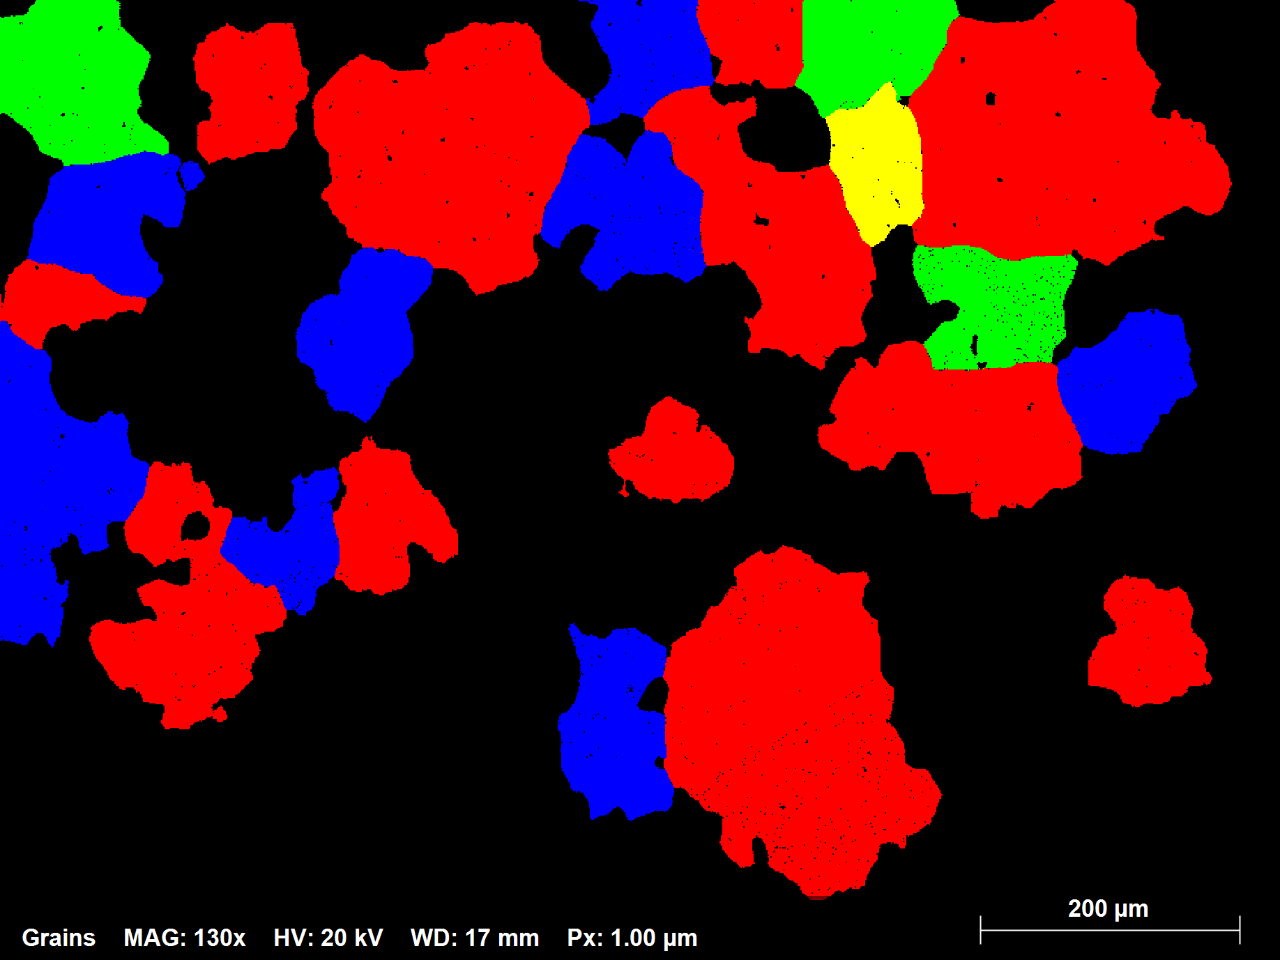 1.3: Subconjunto del mapa EBSD de aleación de Ni que muestra en colores aleatorios todos los granos con un diámetro equivalente mayor que 70 micras; El 1% del número total de granos representa el 42% del área del mapa